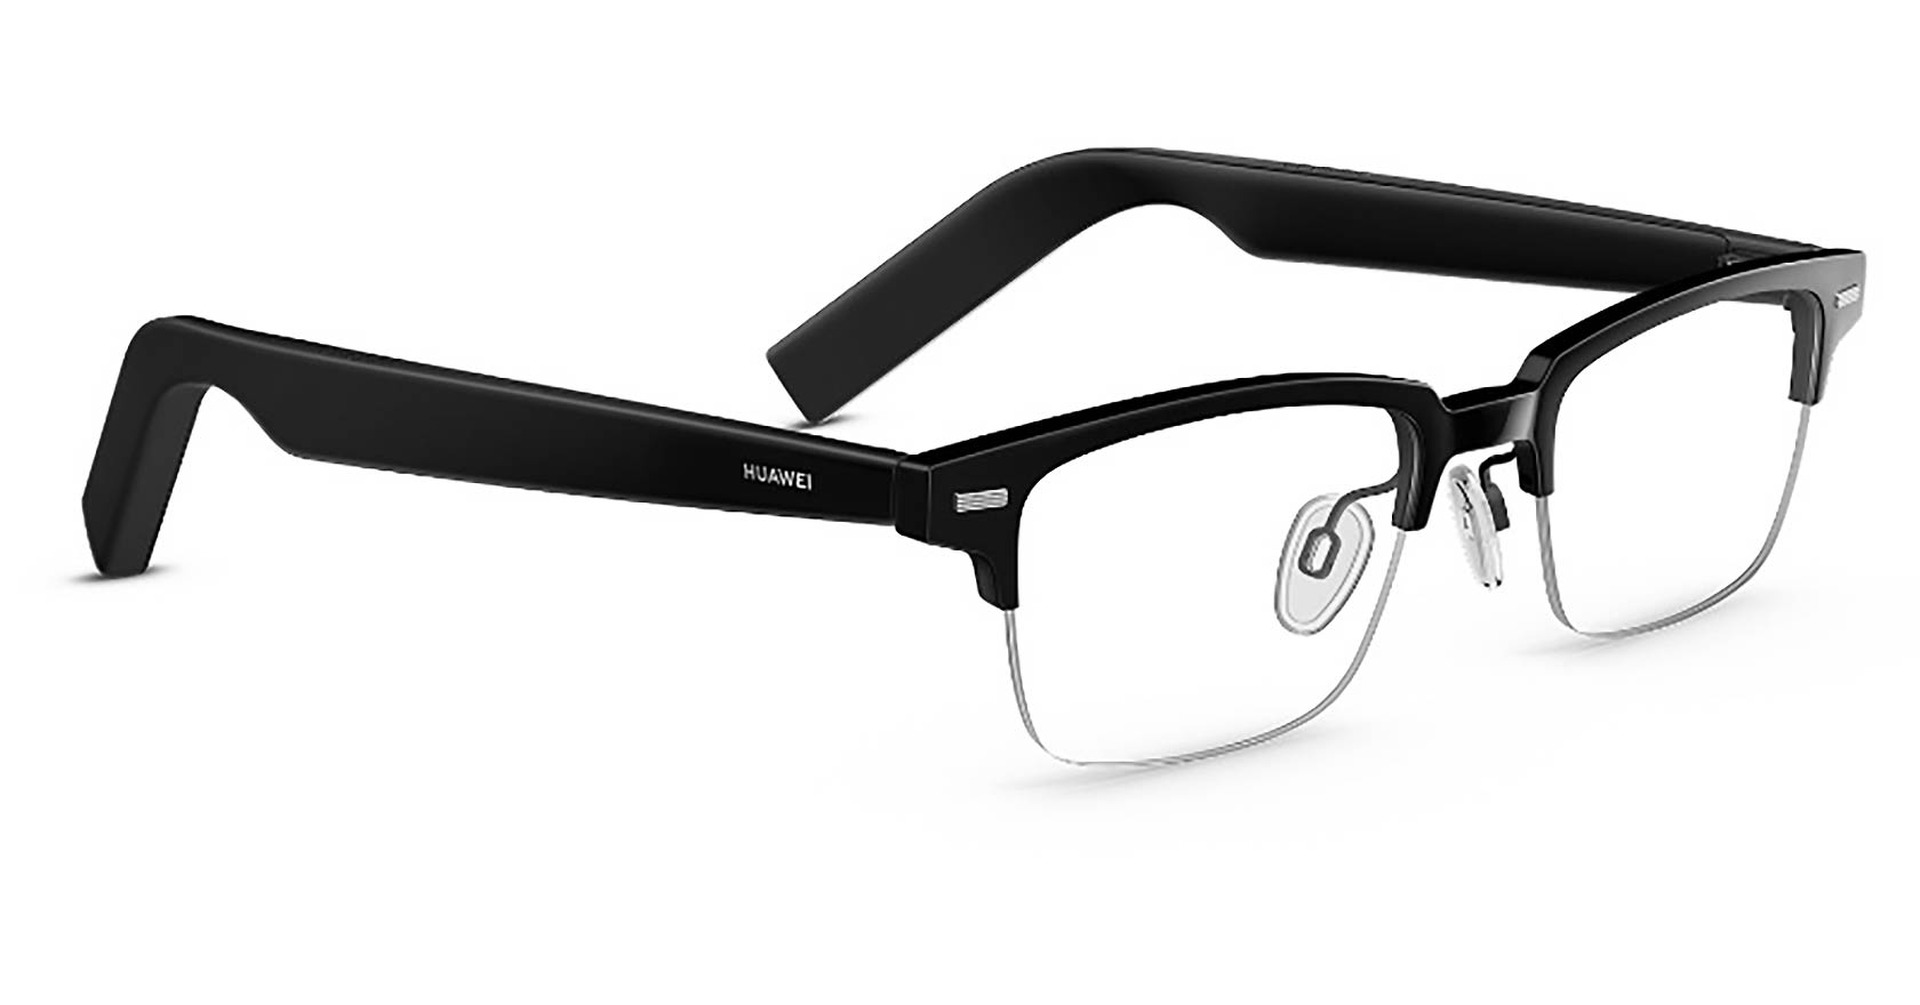 予想外にまともなメガネだったHUAWEI Eyewearはオンライン会議の救世主 ...